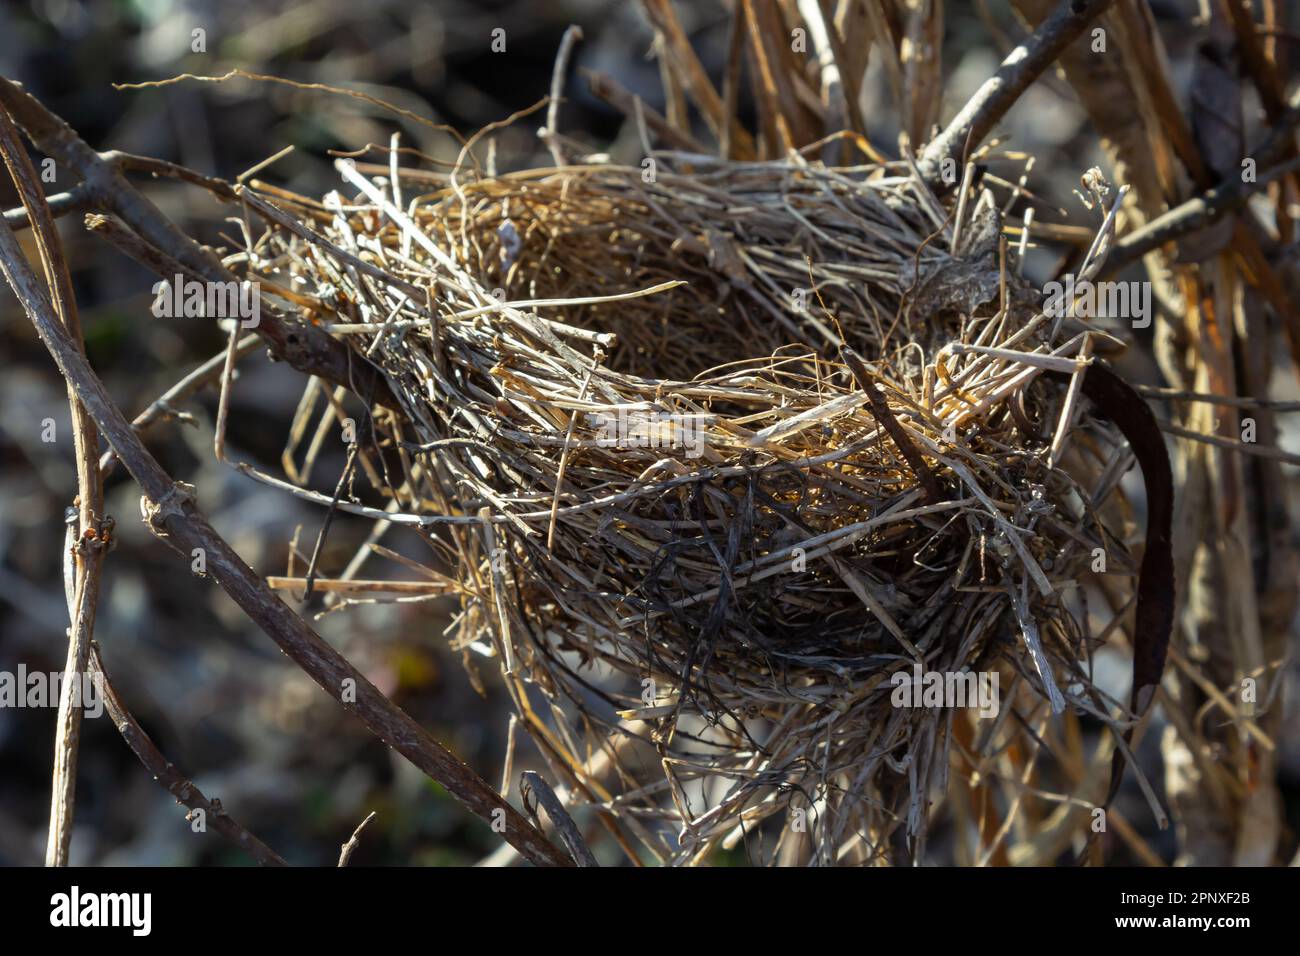 Nido di uccello vuoto. Foresta primaverile, nel cespuglio c'è un nido abbandonato di un uccello, che può tornare a deporre uova e allevare prole. Foto Stock